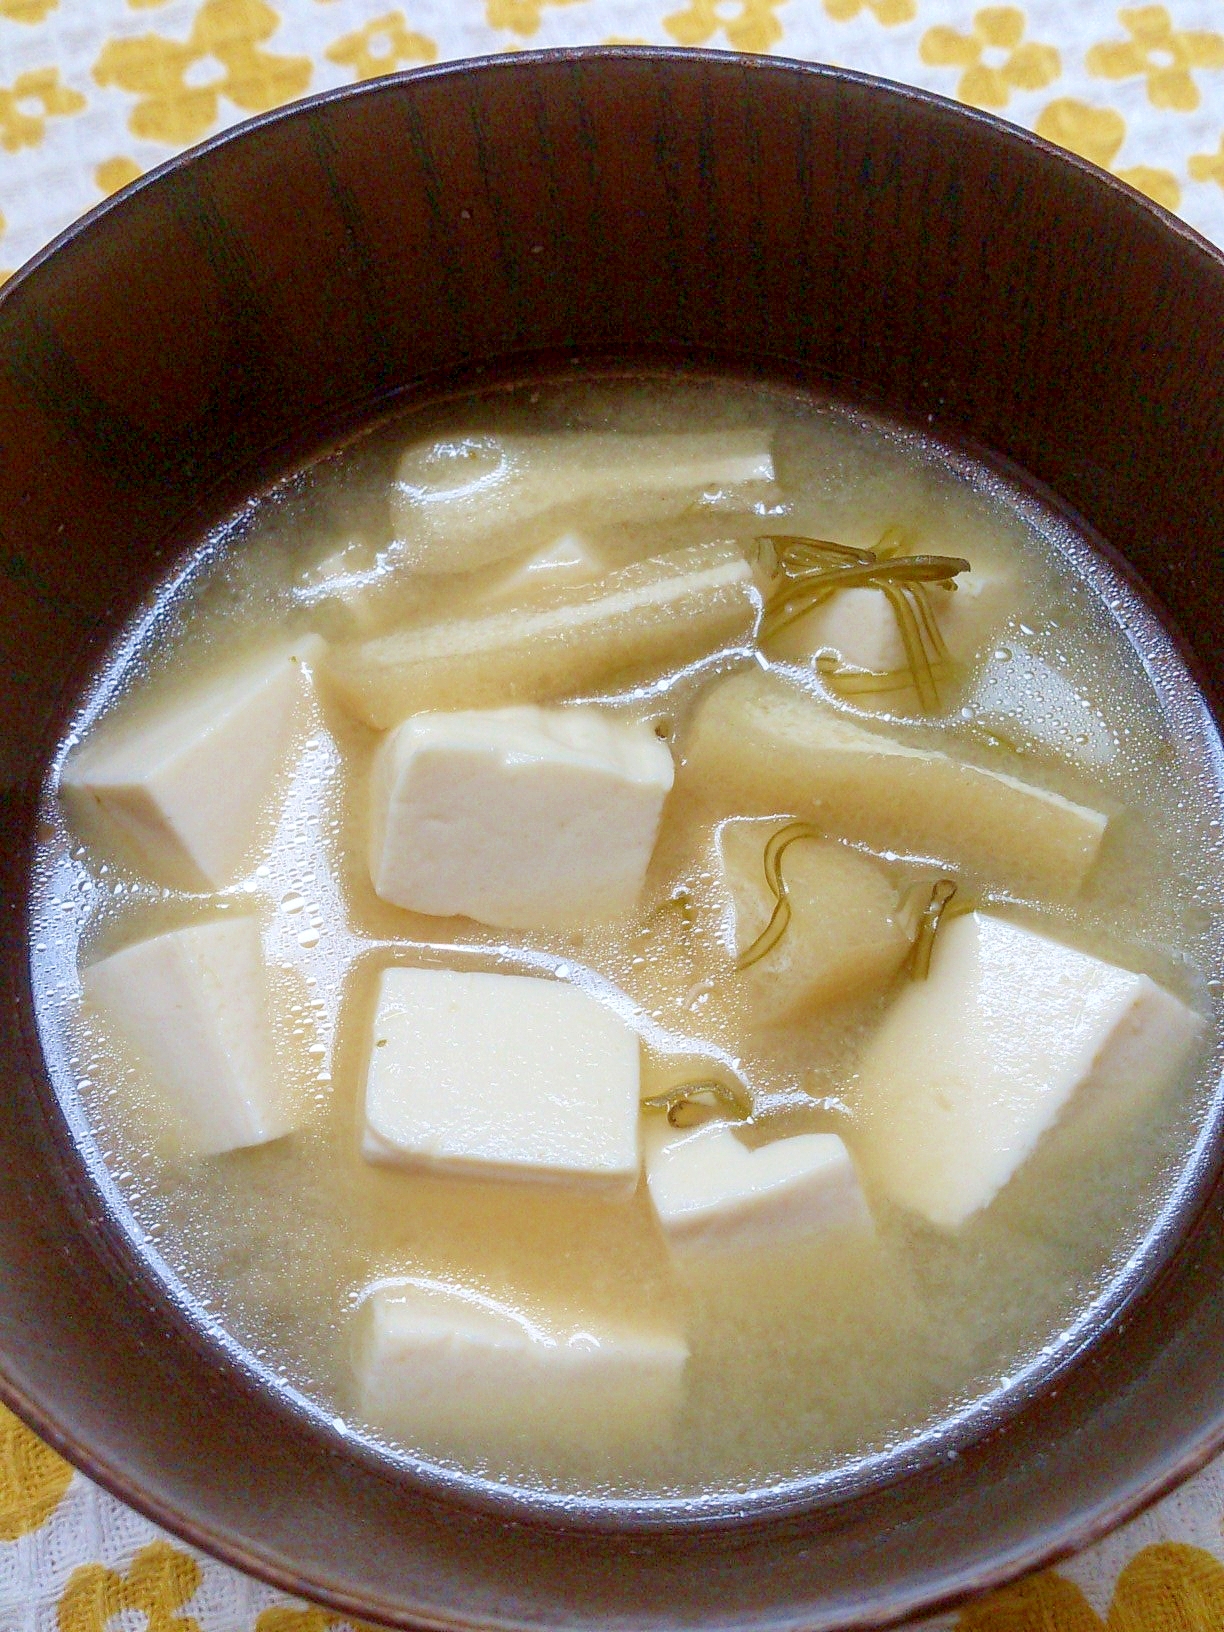 きざみ芽かぶと豆腐の味噌汁